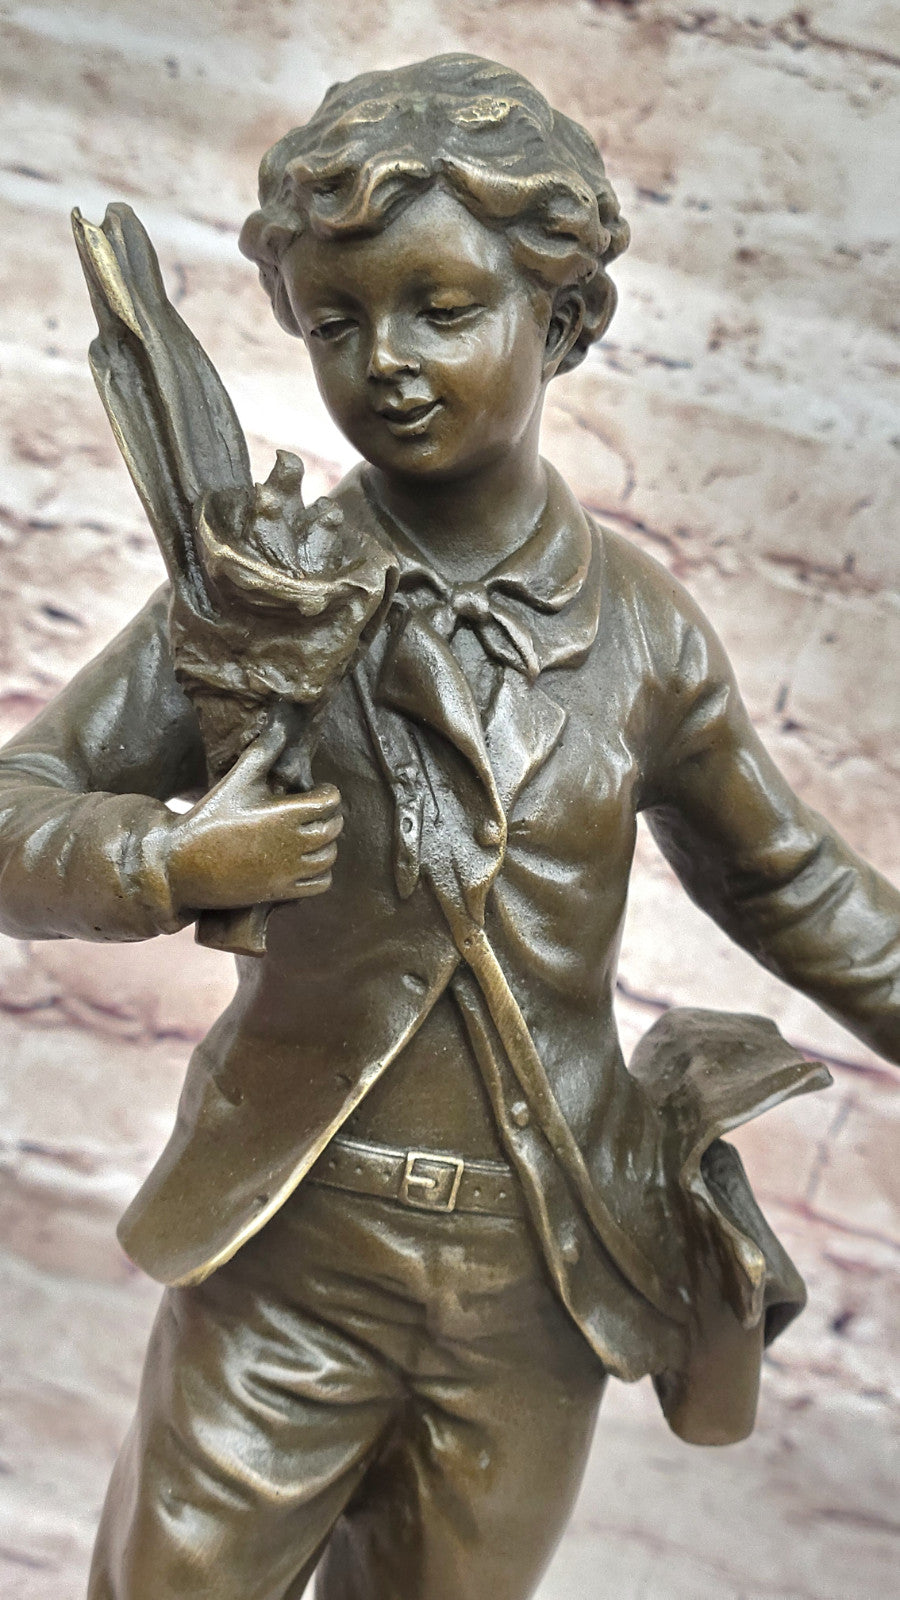 Detailed Figurine: Bruchon`s French Bronze School Boy - Hot Cast Sculpture